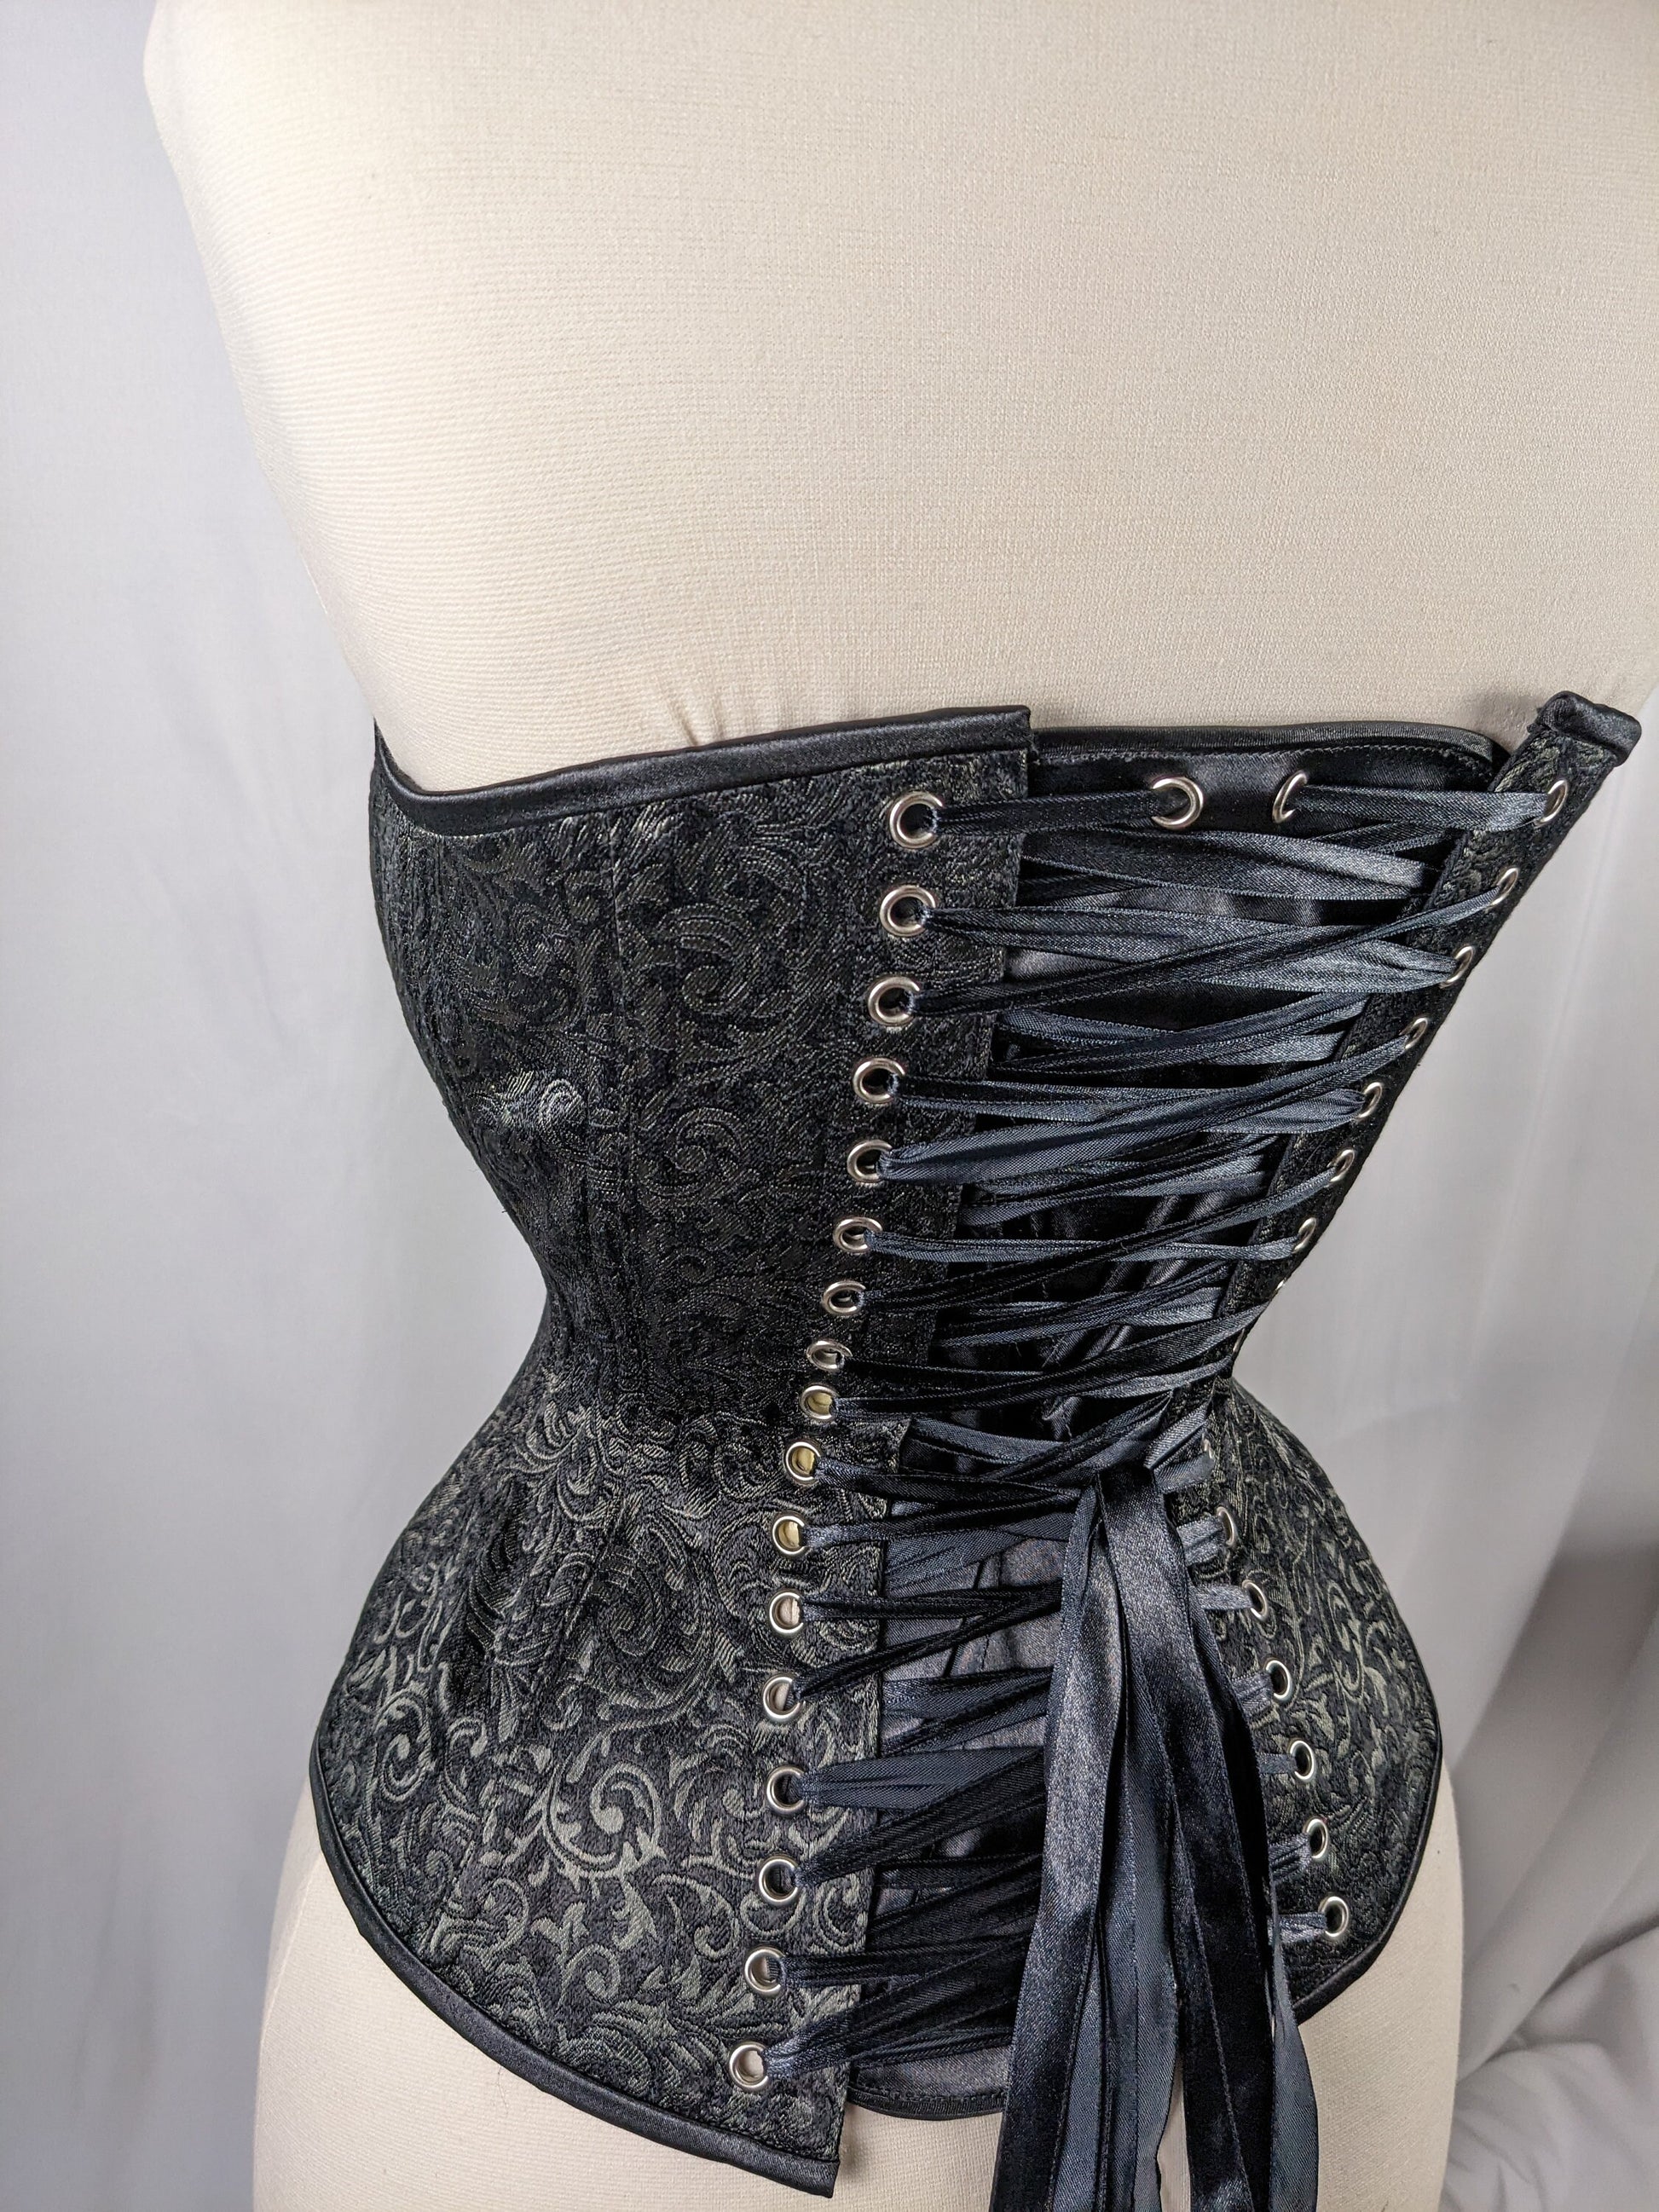 https://www.corsetsandcogs.com/cdn/shop/files/il_fullxfull.4773412867_pwrb.jpg?v=1700334206&width=1946